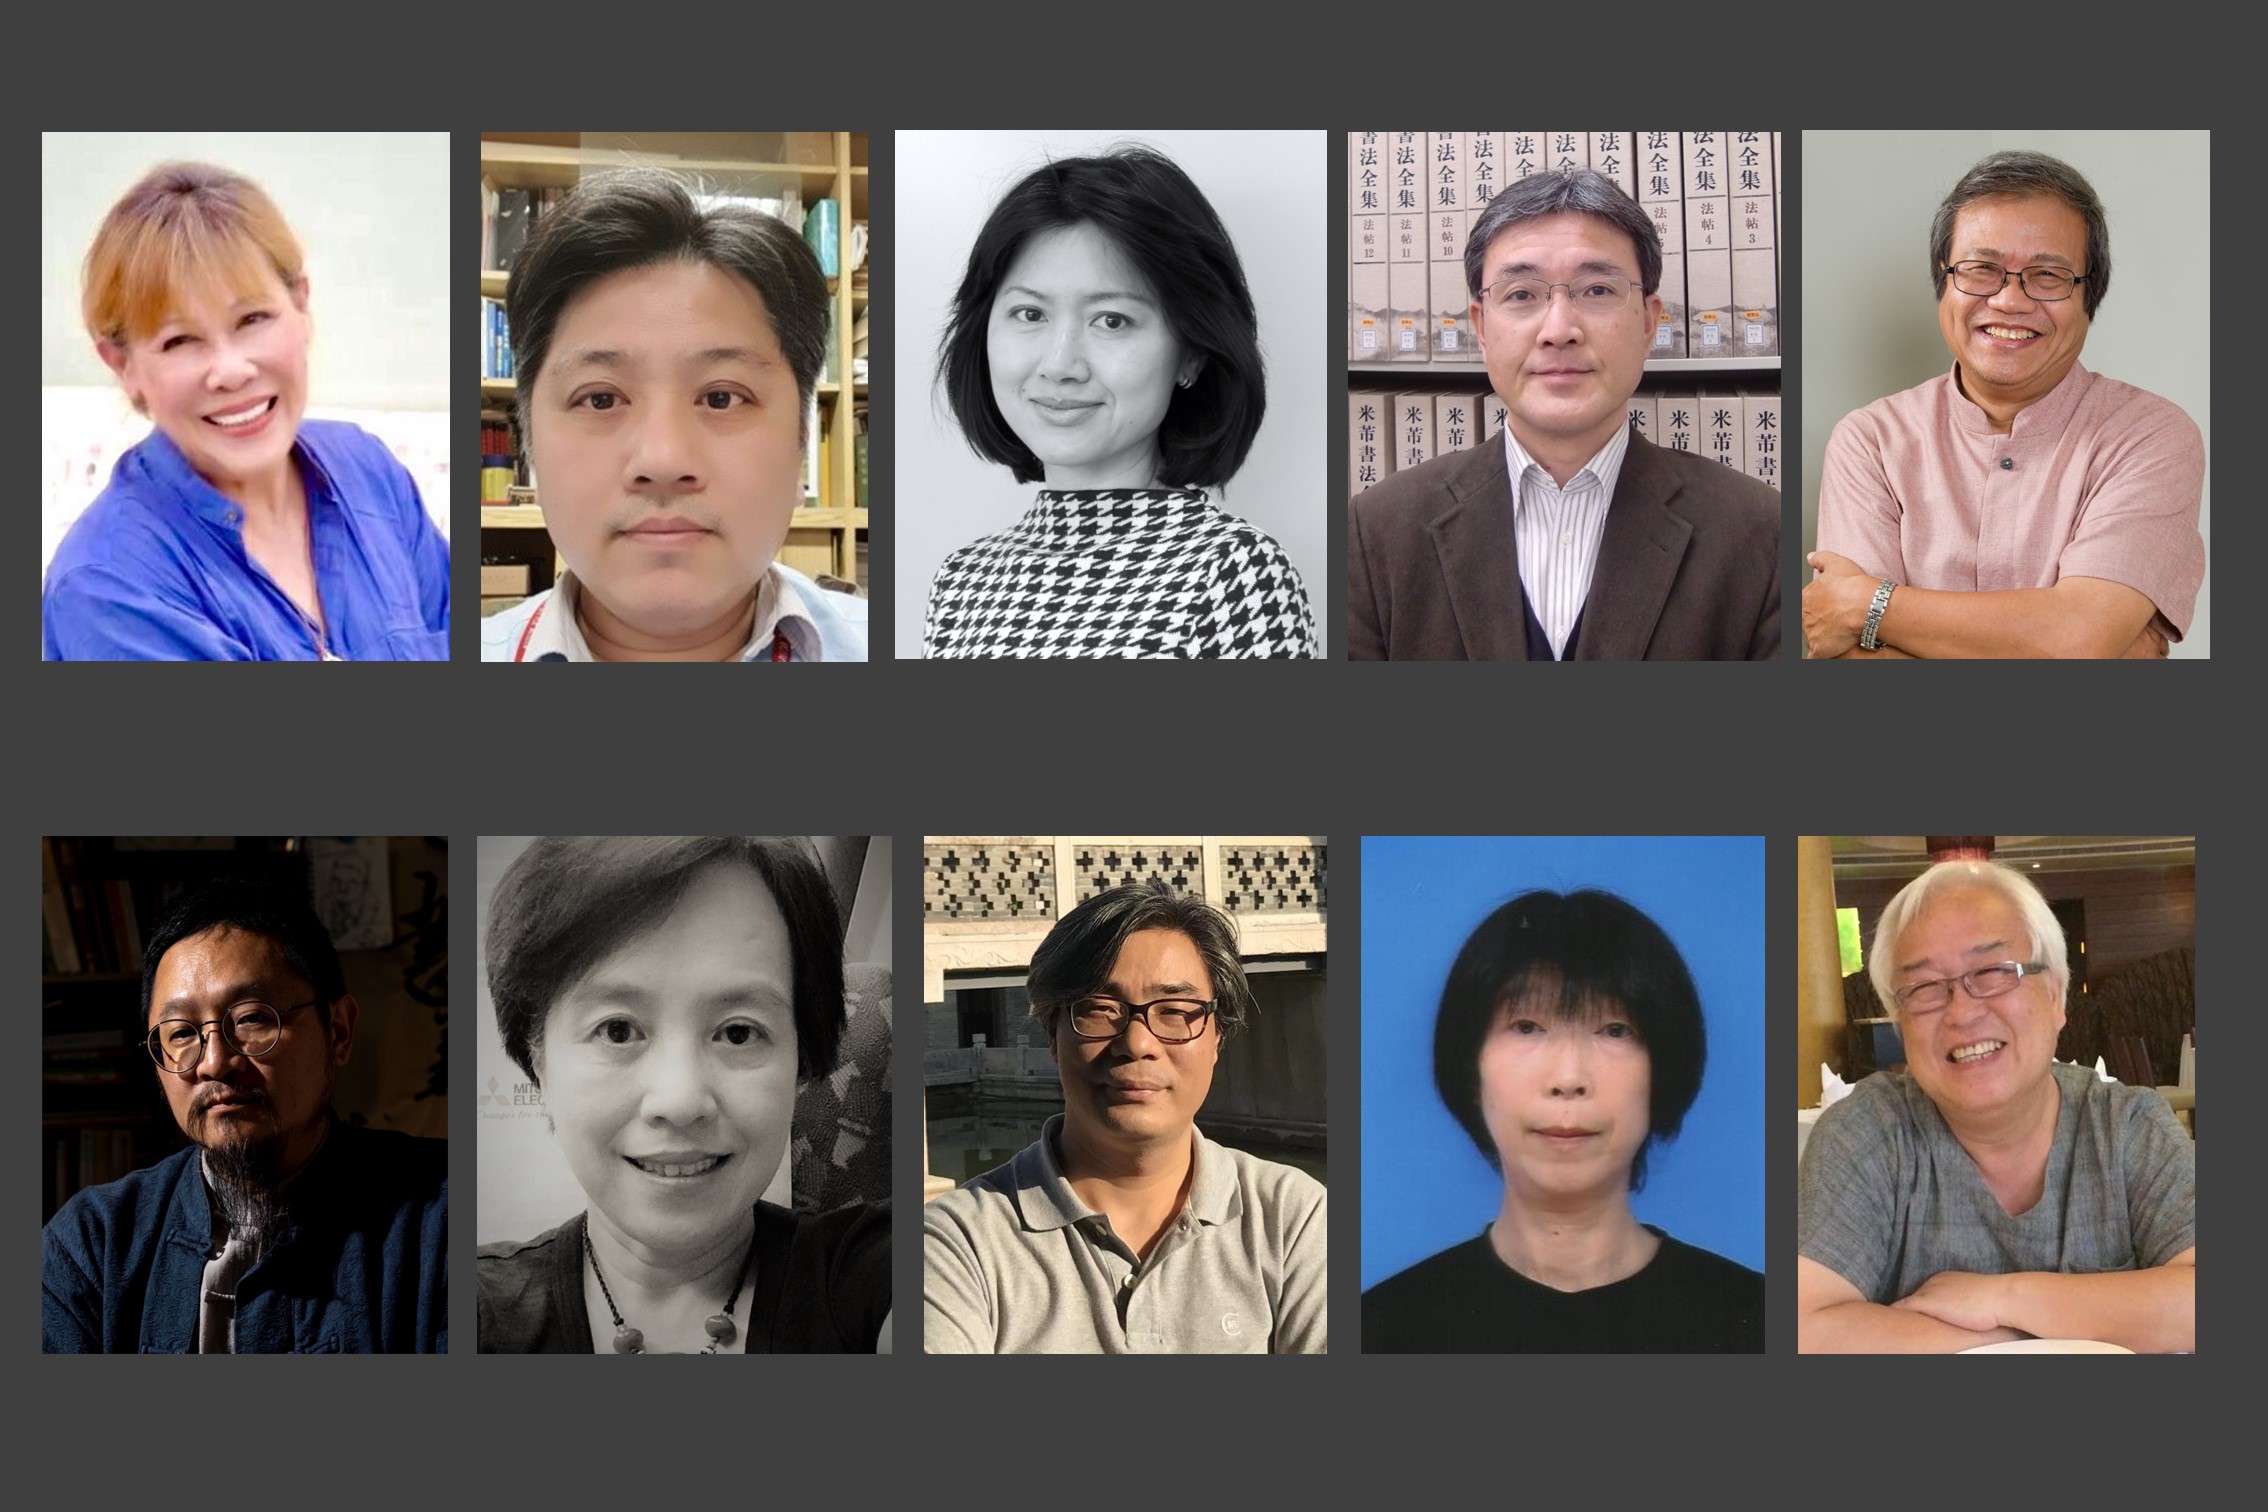 公布「2022橫山獎-書藝研究與評論雙年獎 」東亞書學評審陣容 開拓書藝思考的當代向度